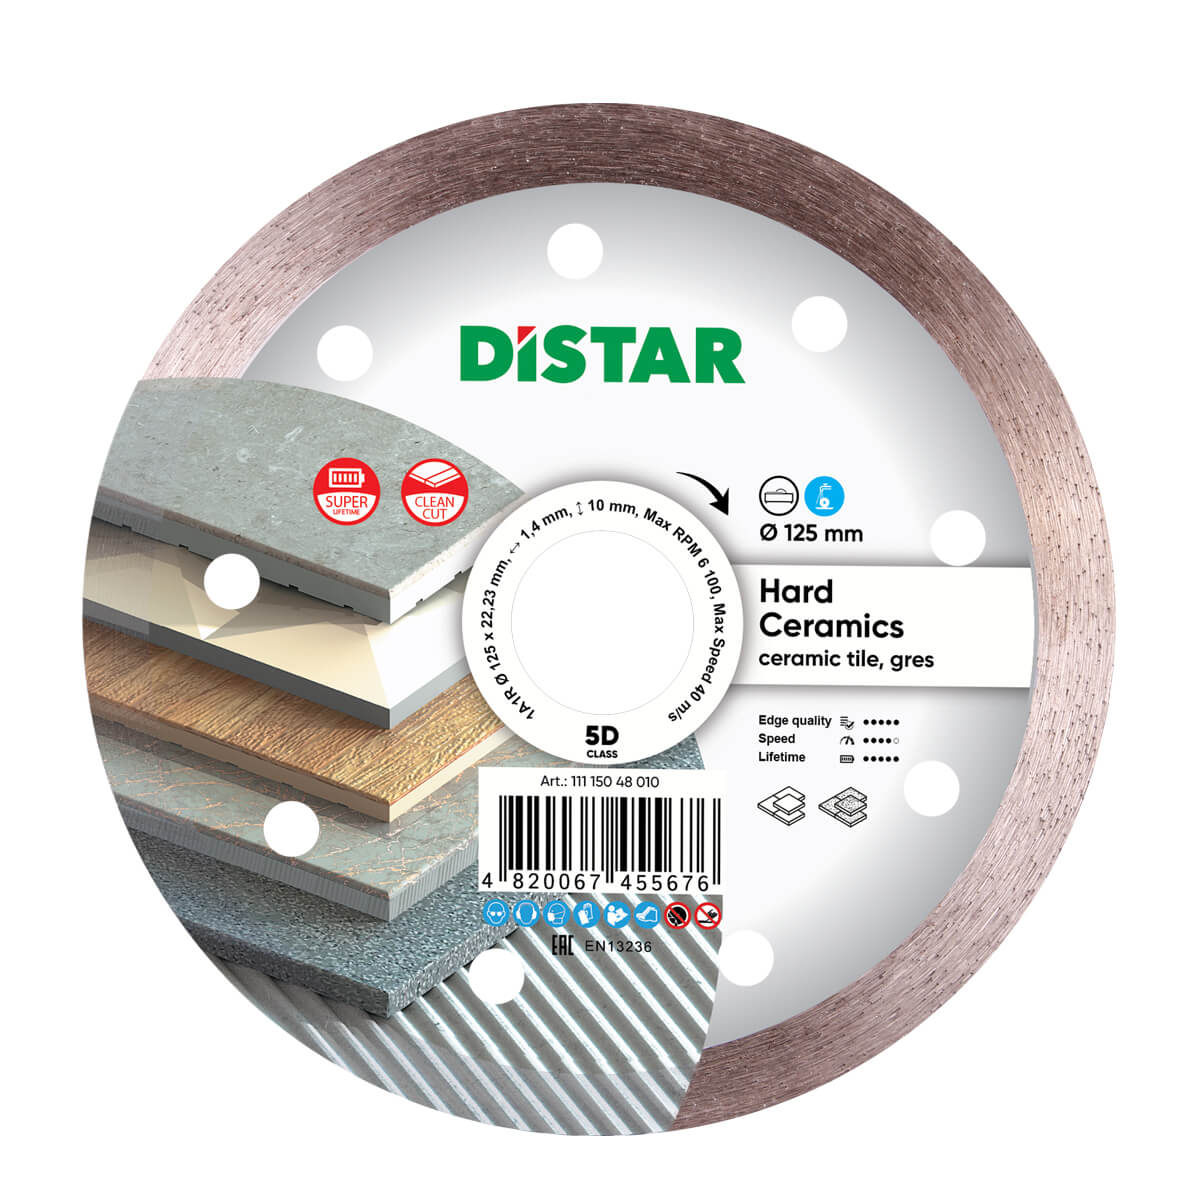 Диск алмазный отрезной по керамограниту и керамике для УШМ Distar 125 мм Hard ceramics 5D диск отрезной алмазный distar 1a1r granite 125 х 22 2 мм